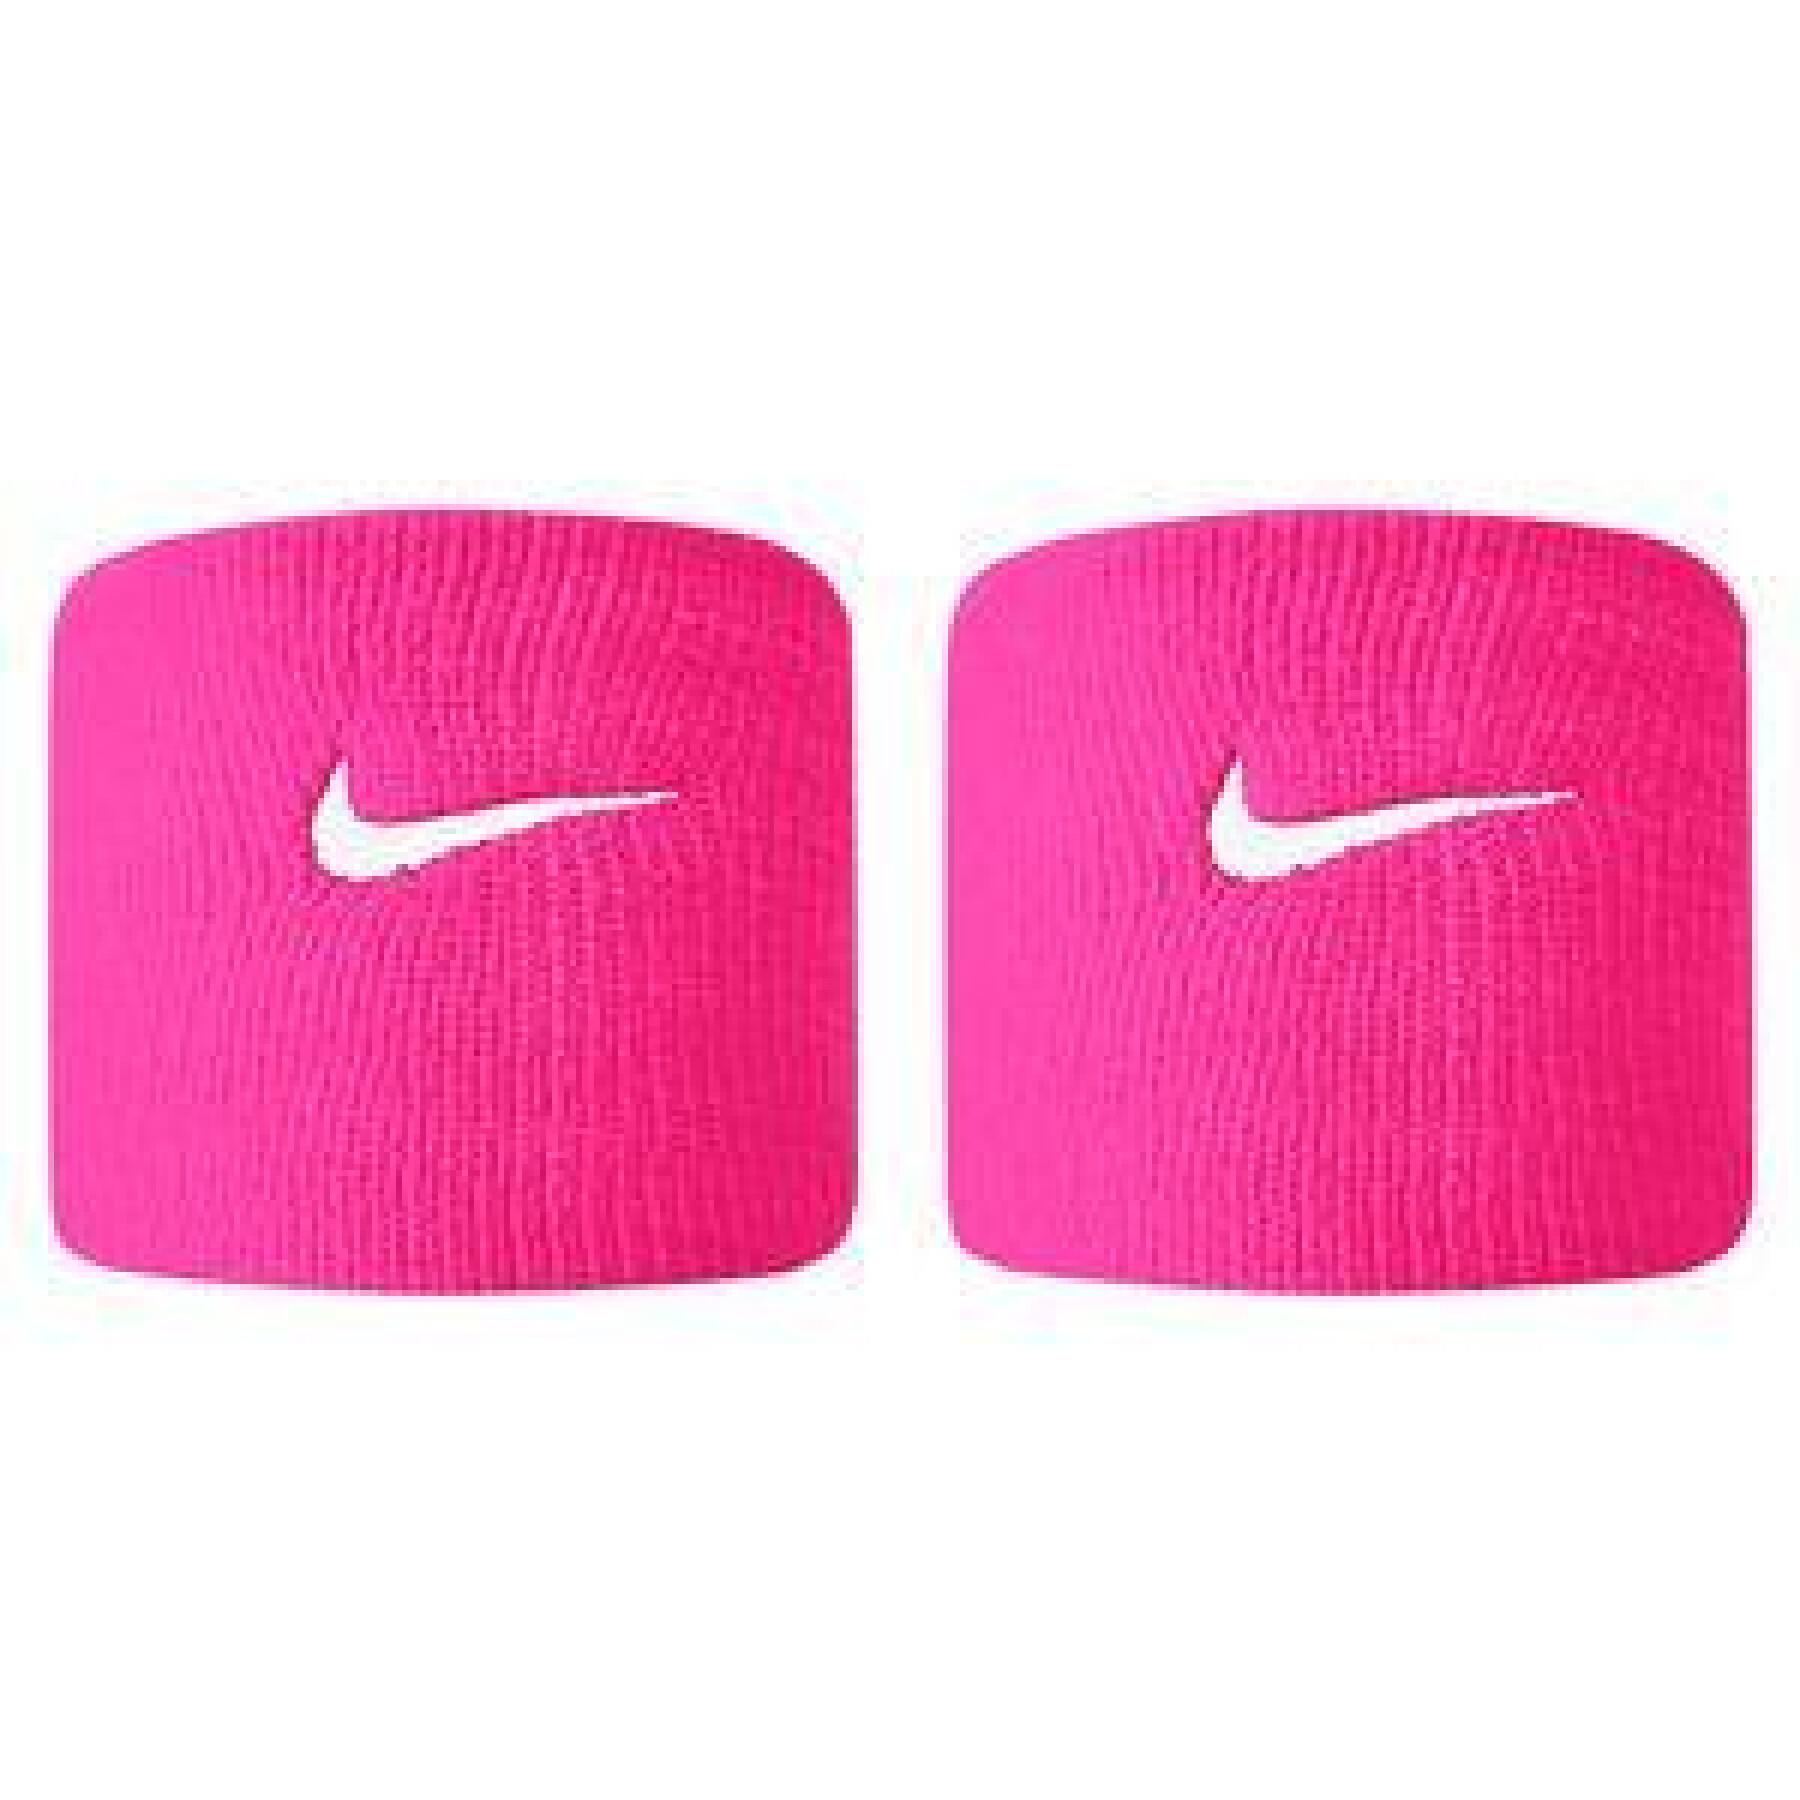 Conjunto de 2 algemas de esponja Nike Premier